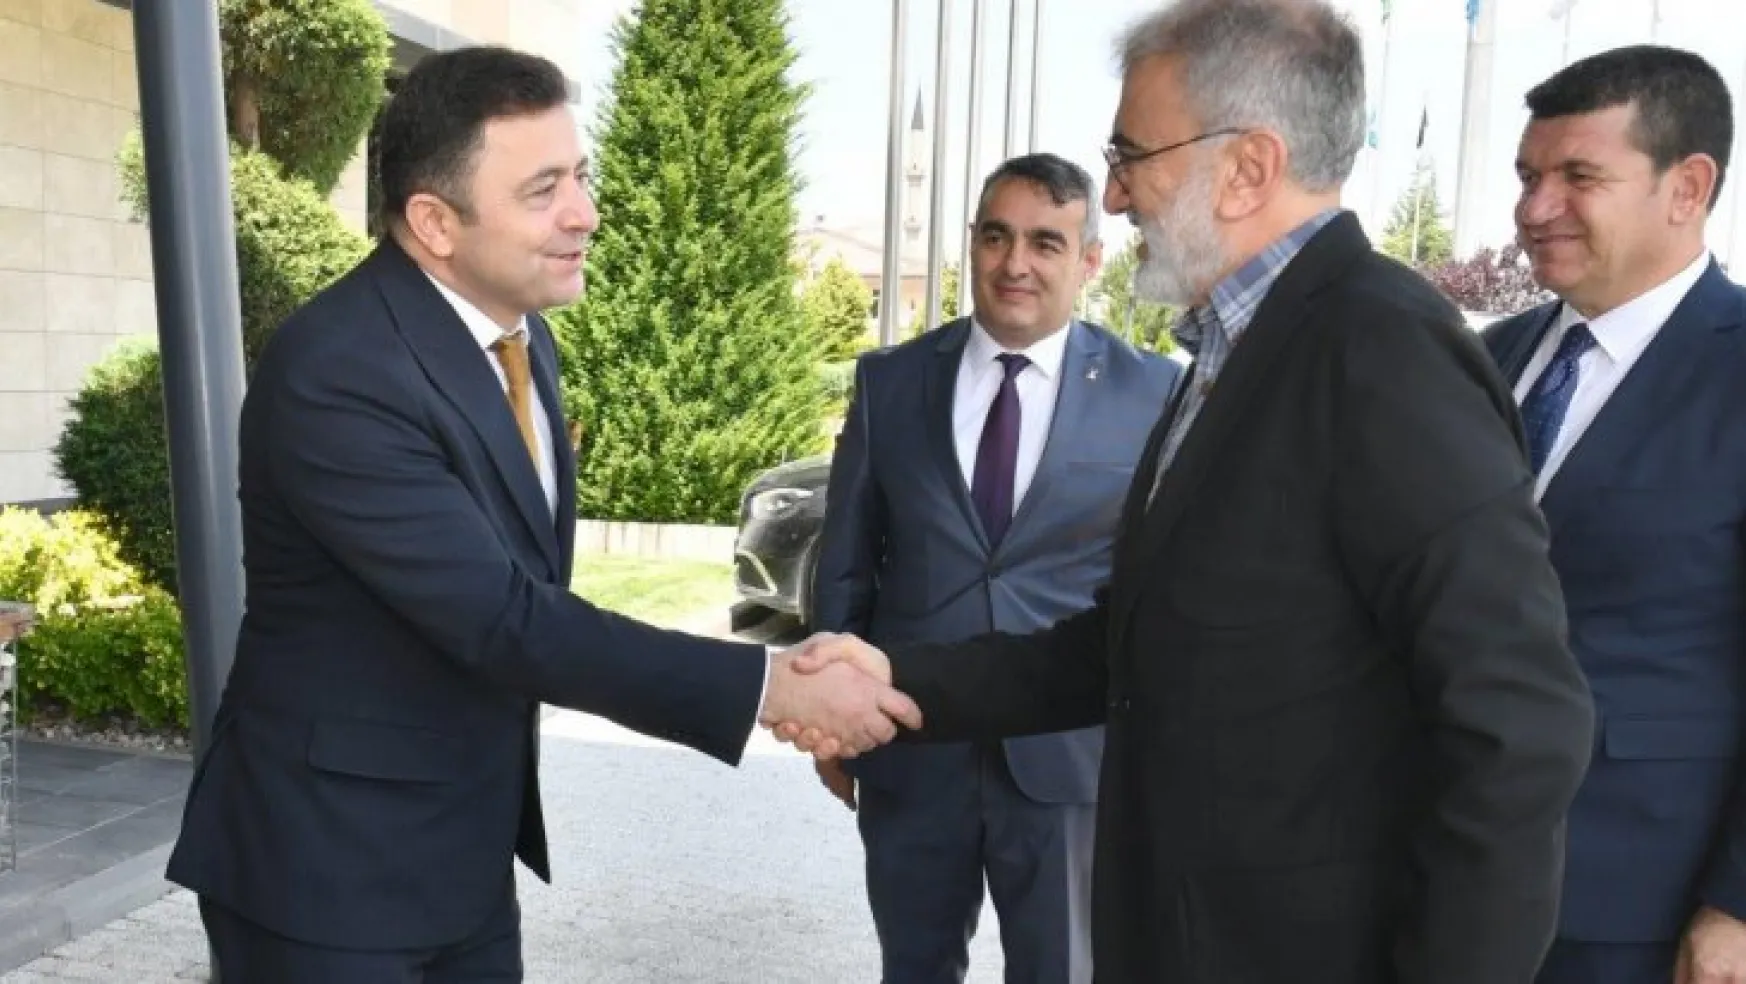 Milletvekili Taner Yıldız, Kayseri OSB Başkanı Mehmet Yalçın'ı ziyaret etti